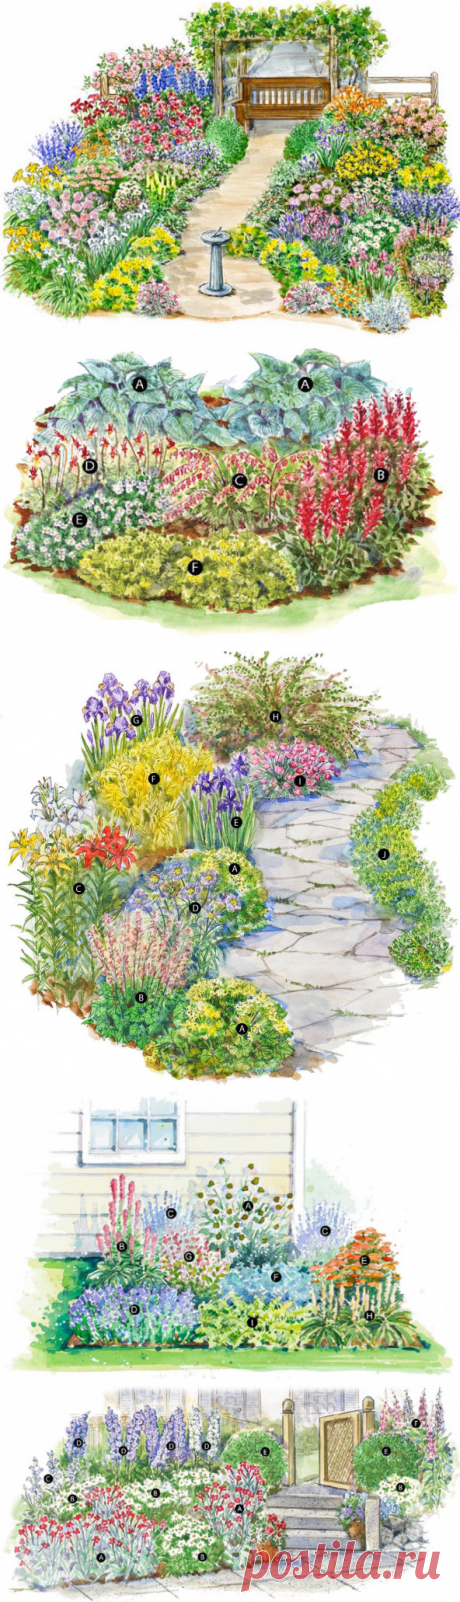 Описание цветочных схем. Подборка клумб и цветников для малых и больших садов. Фото клумб и цветников.